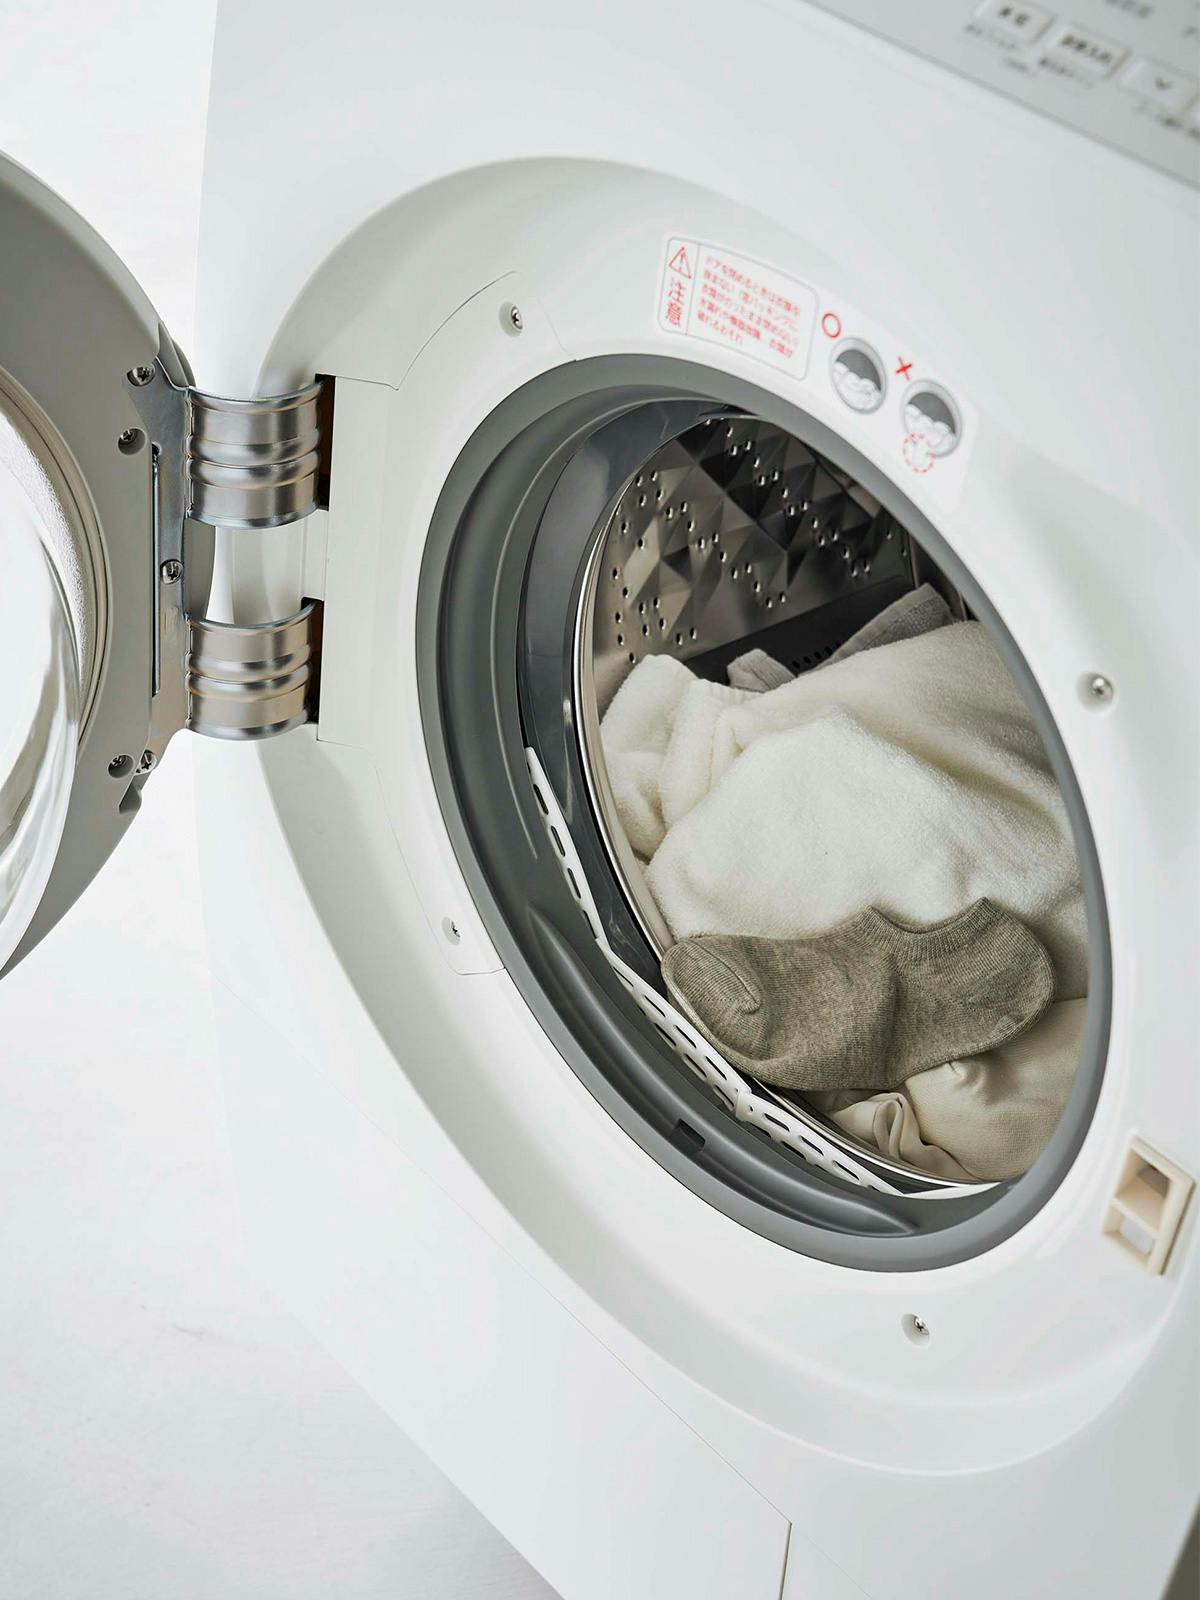 ドラム式洗濯機ドアパッキン小物挟まり防止カバー プレートのイメージ